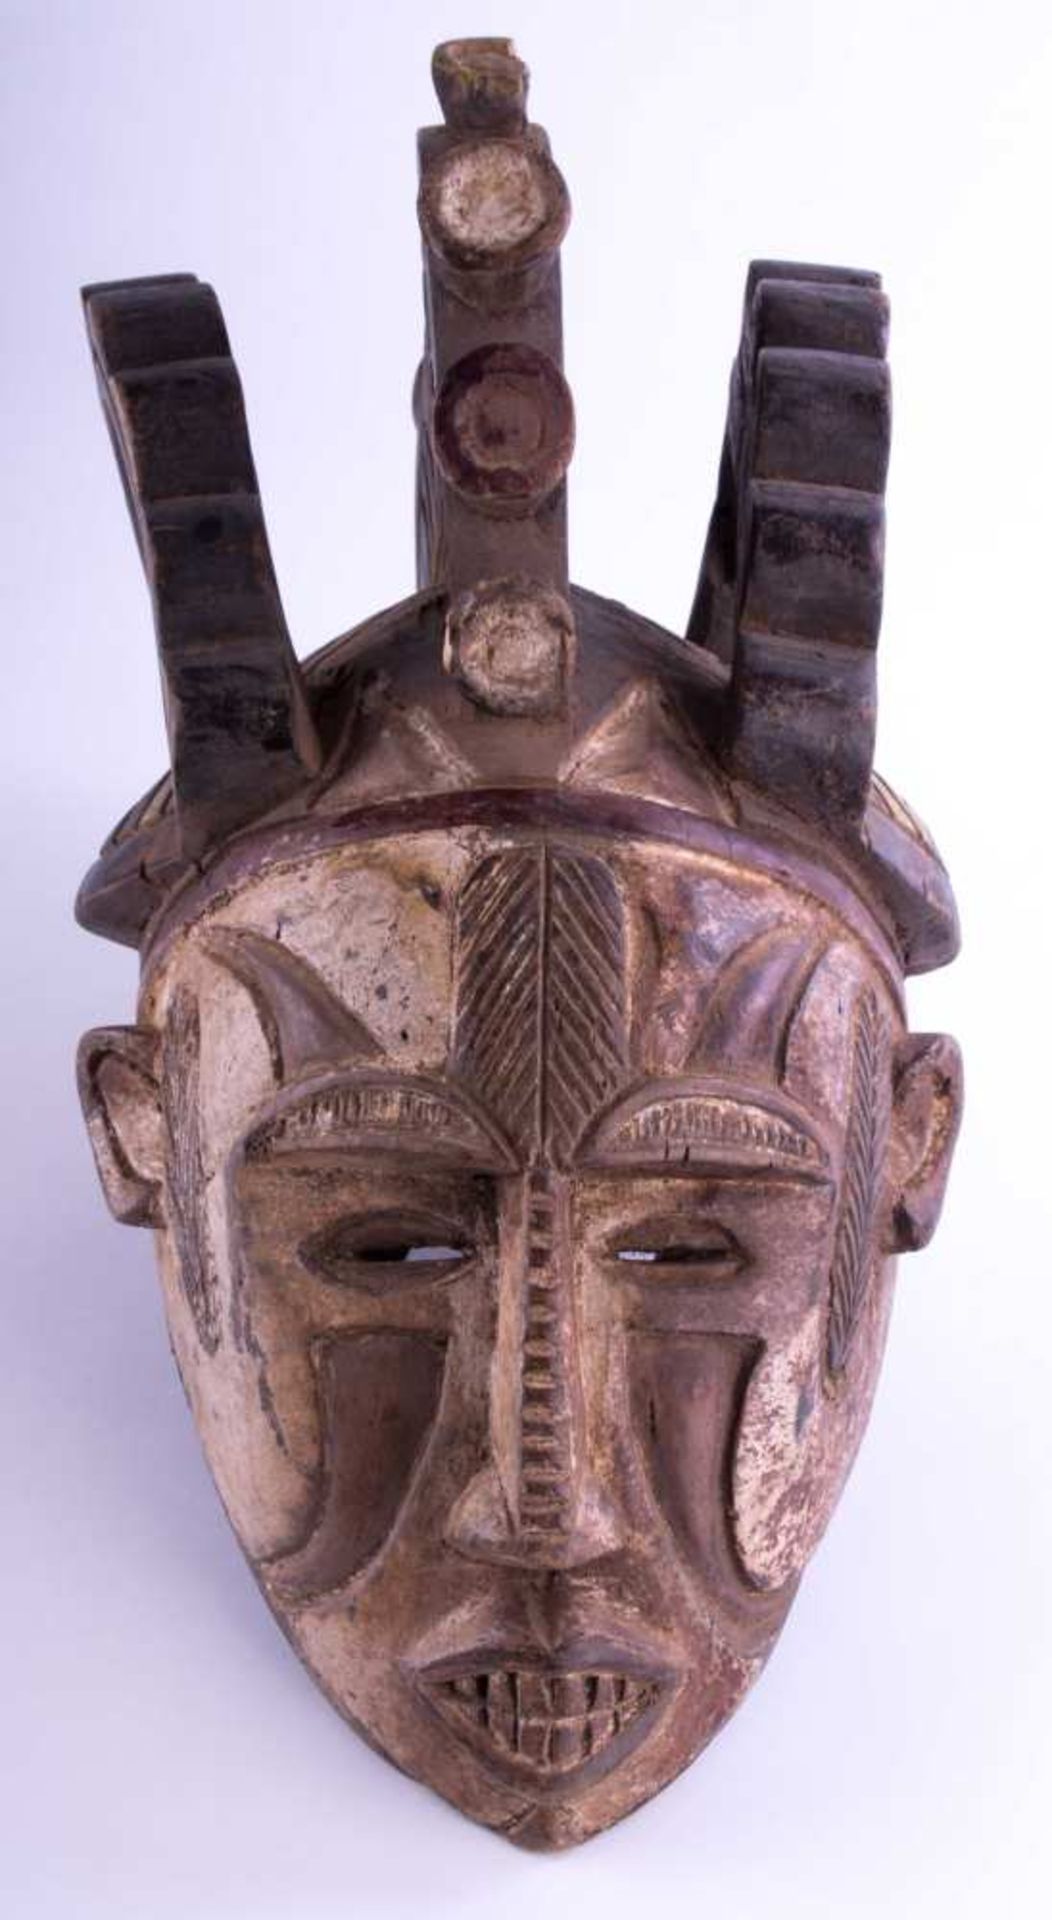 große Maske Afrika um 1900 / Large mask, Africa about 1900 Holz, ca. 55 cm x 25 cm 32 cm / wood,